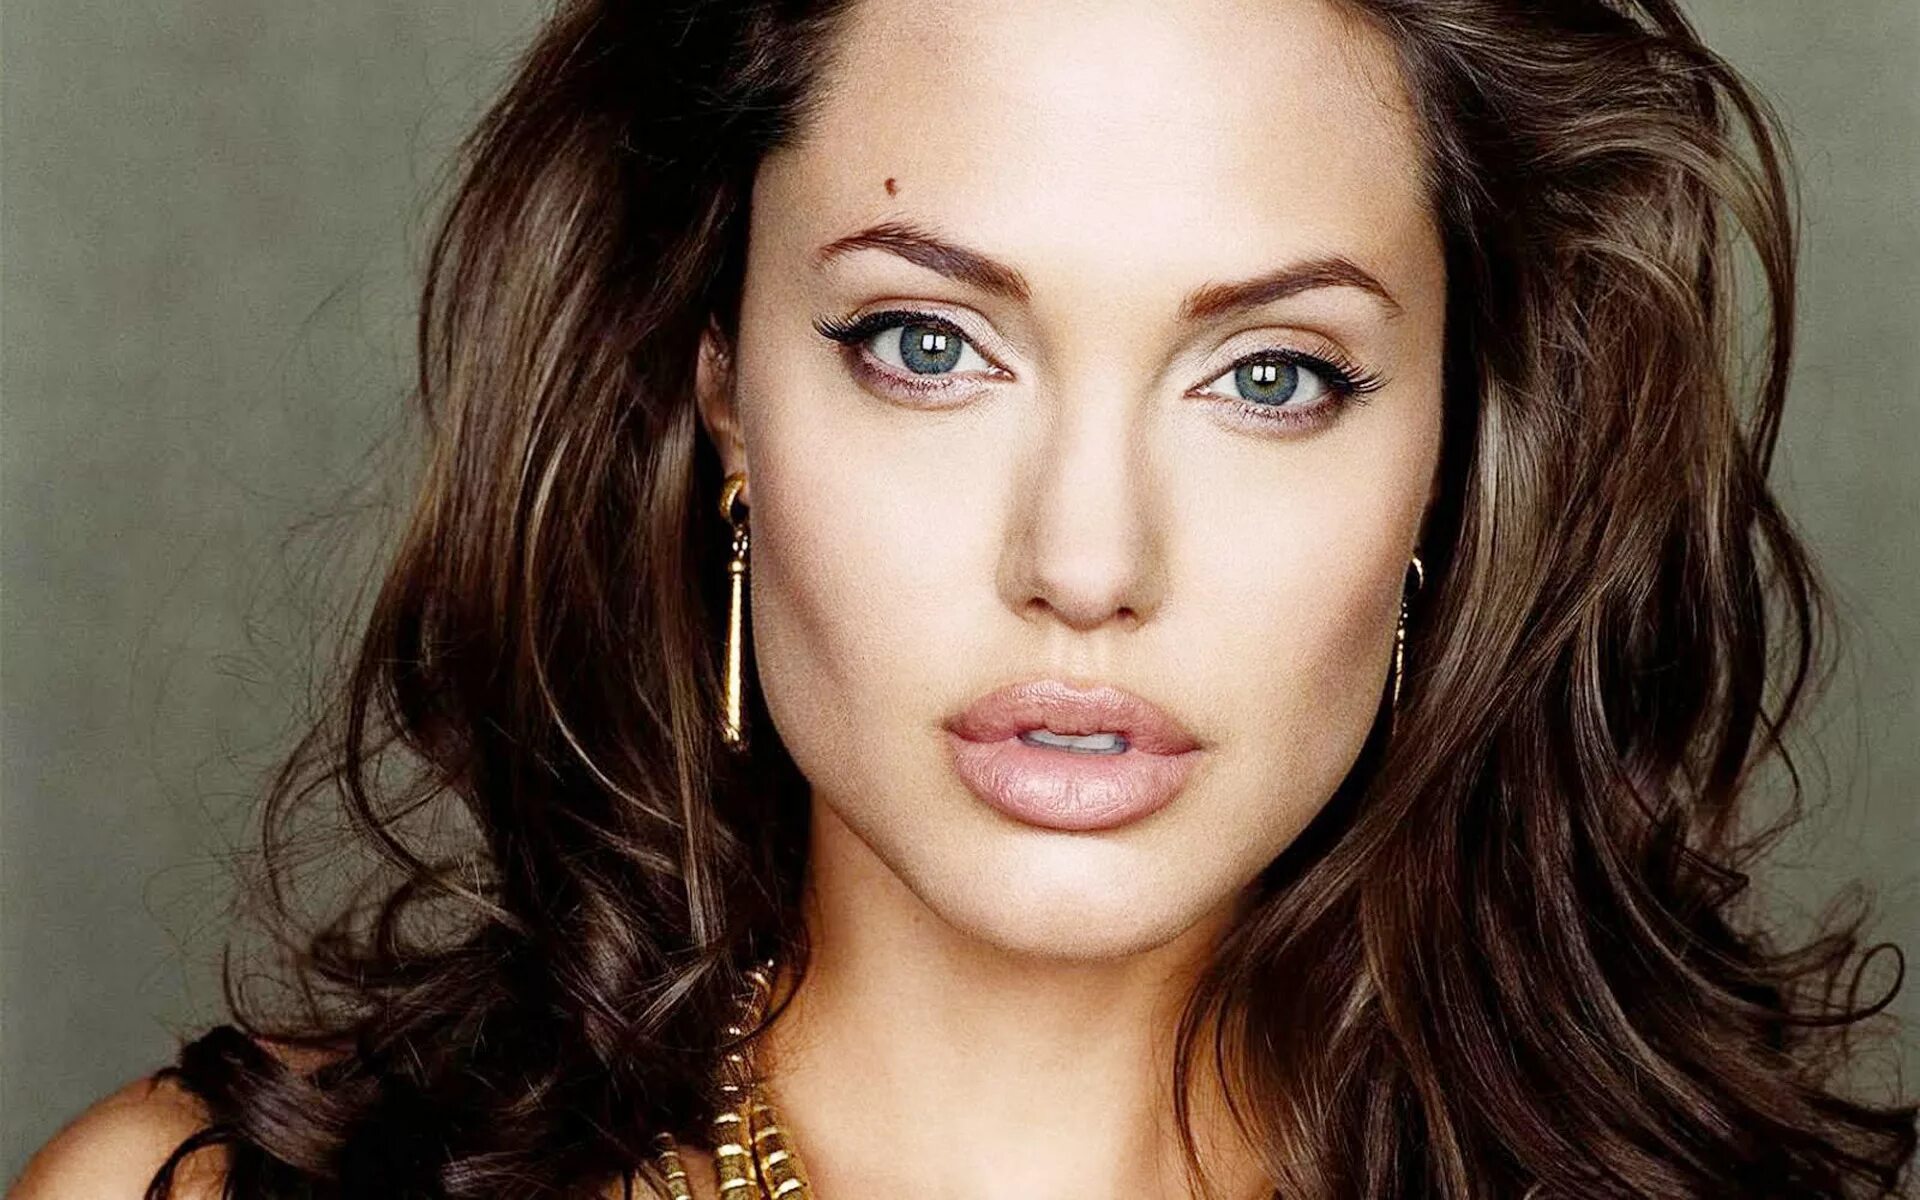 Какой актрисы говорит. Анджелина Джоли. Анджелина Джоли анфас. Раскосые глаза Анджелина Джоли. Актрисы Голливуда Анджелина Джоли.